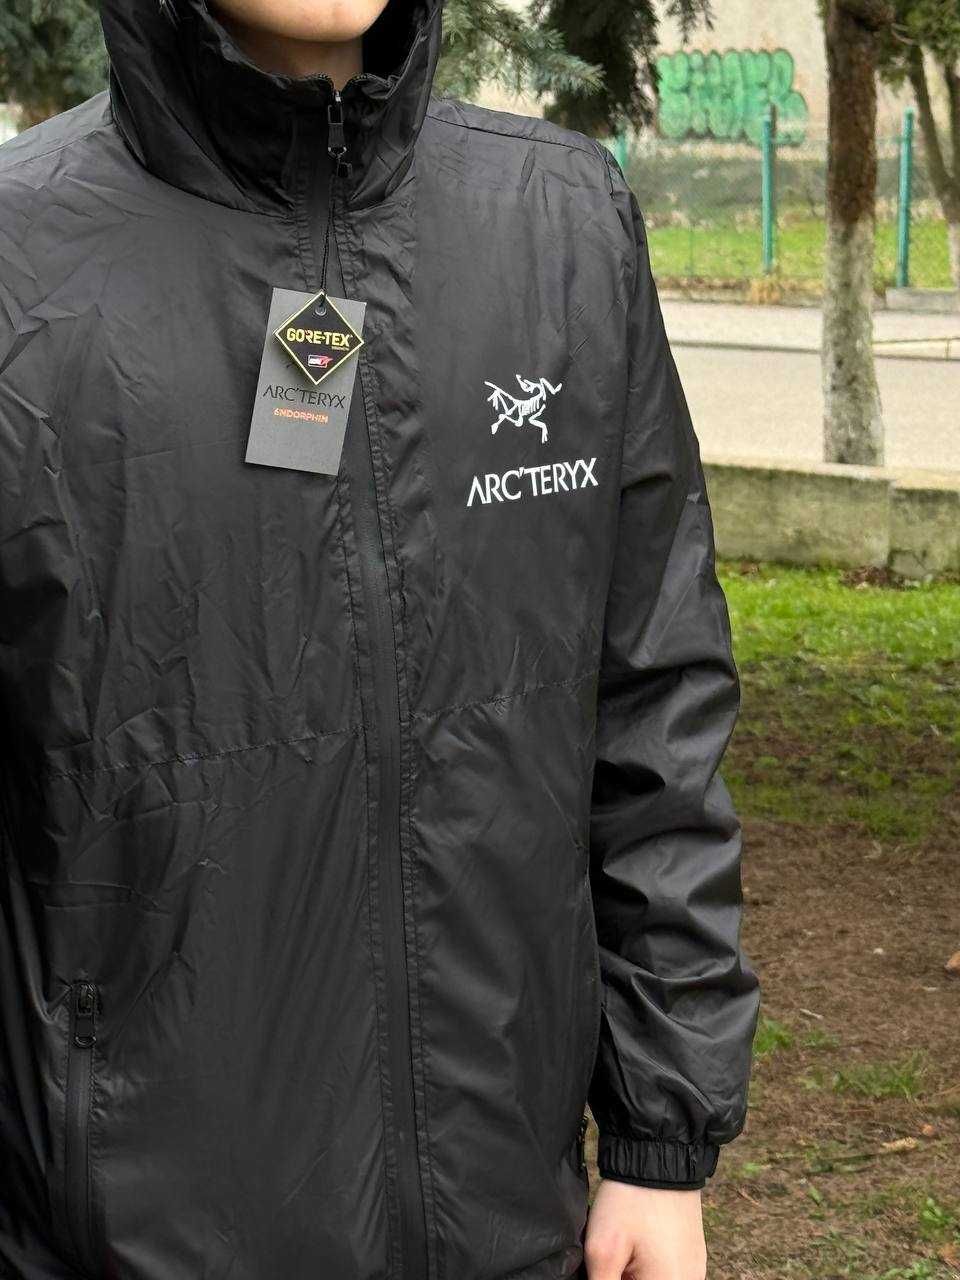 Куртка нова чоловіча Arcteryx / Новая ветровка Артерикс